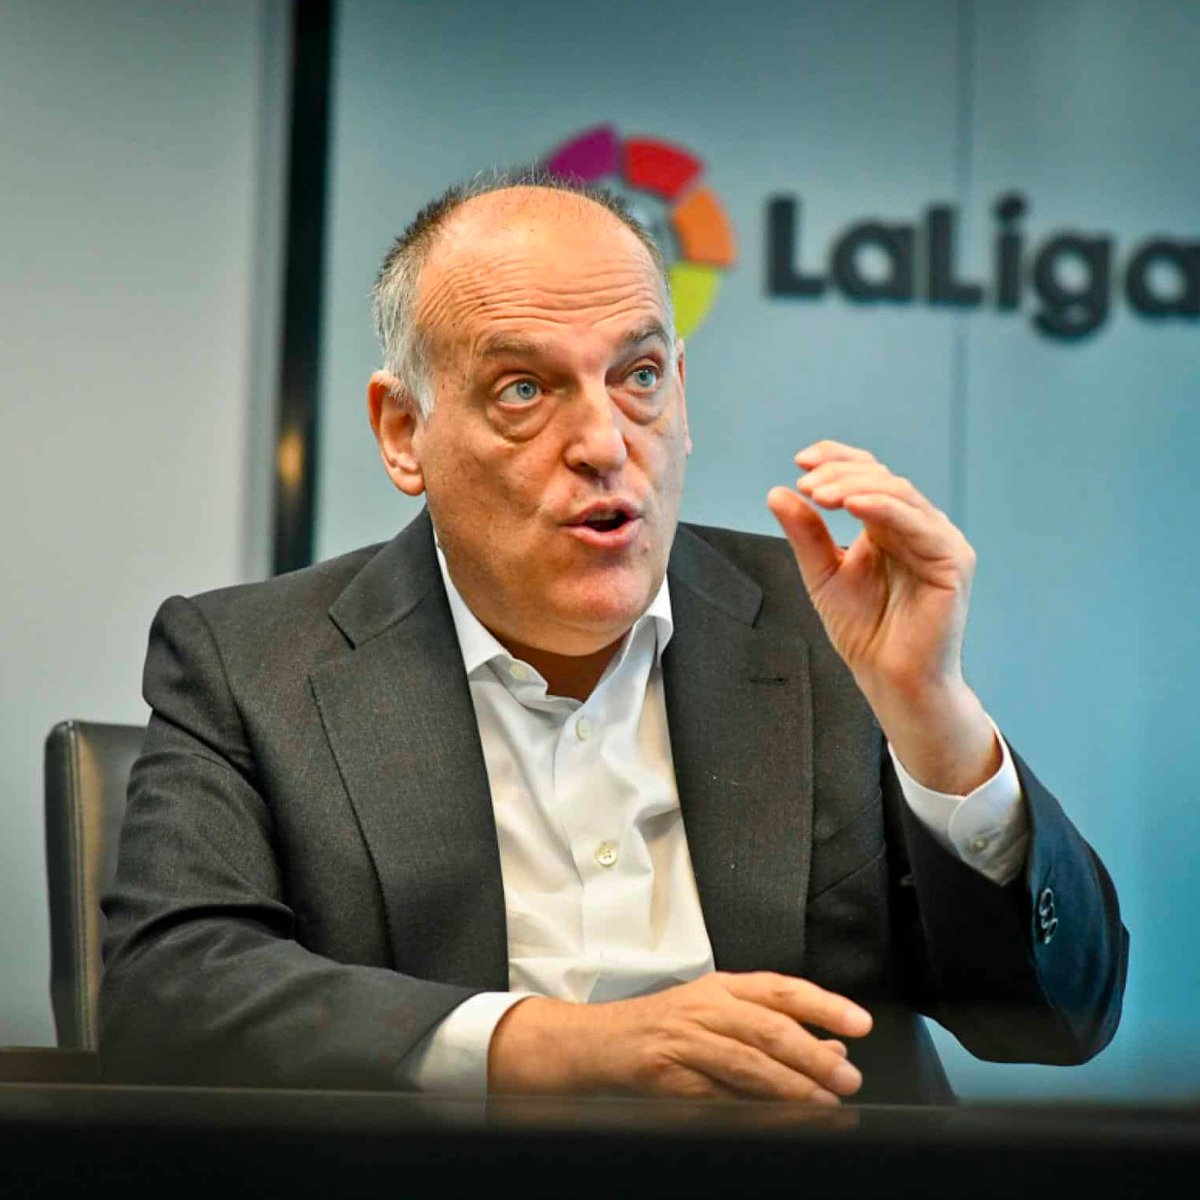 Luis Rubiales, président de la Fédération Espagnole, recadre publiquement Javier Tebas en conférence de presse : 'Je vous demande d’ignorer le comportement irresponsable du président de la Liga qui va sur les réseaux sociaux pour se lancer dans un débat avec un joueur qui a reçu,…